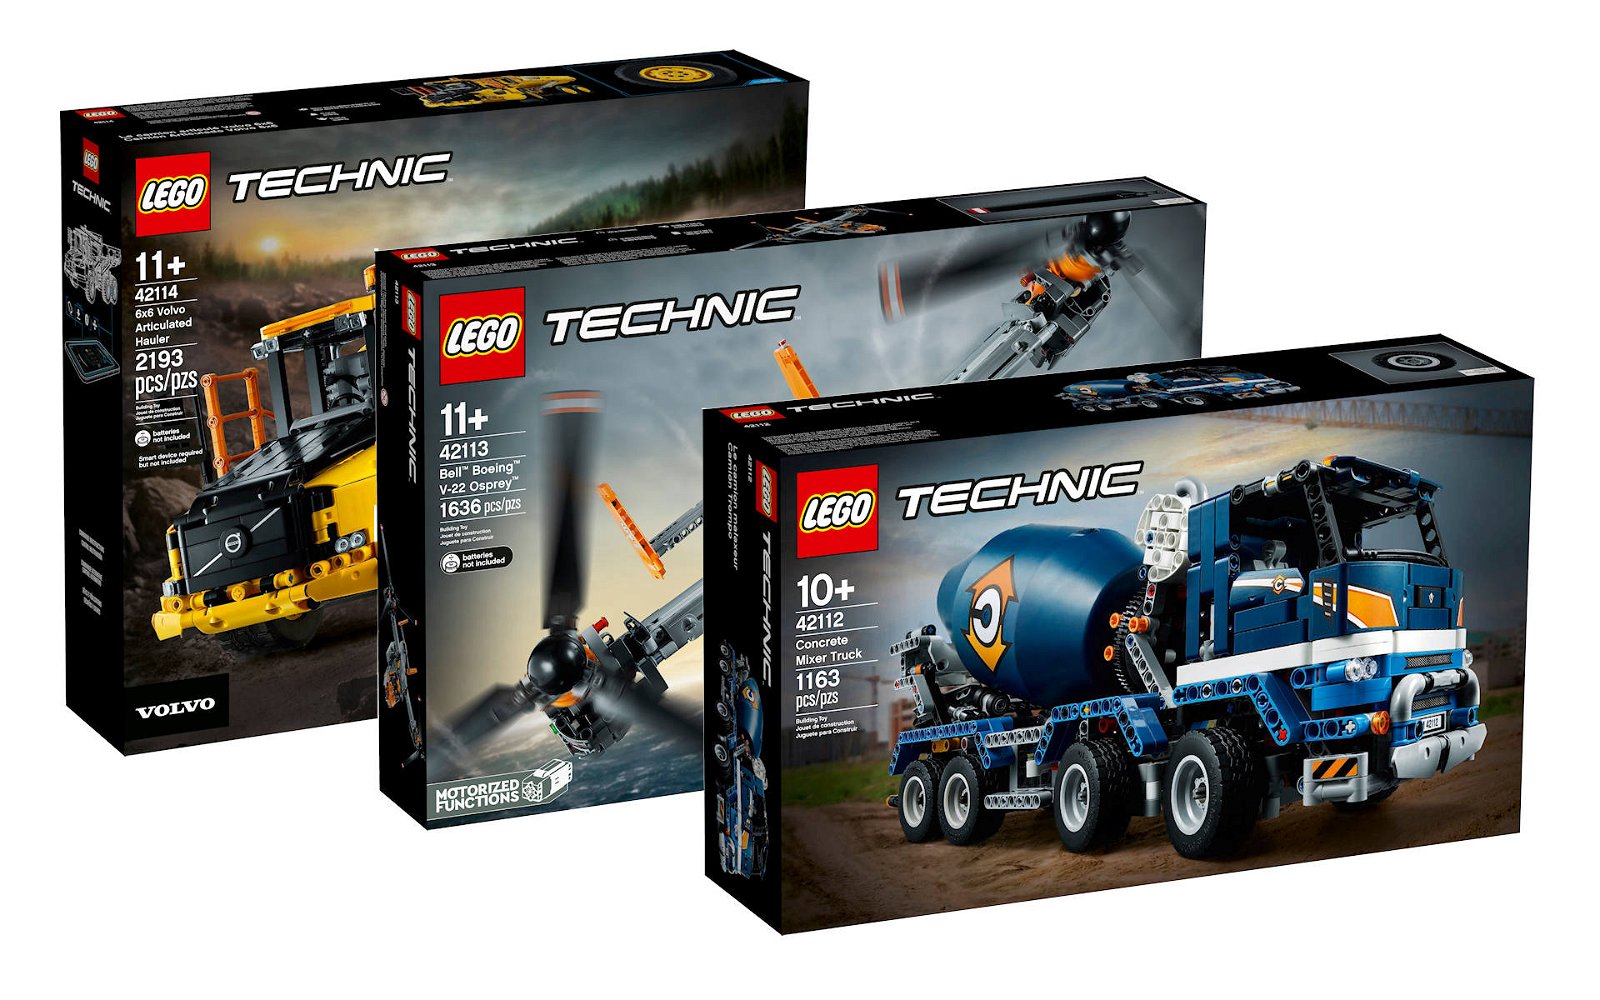 Immagine di LEGO: i nuovi set Technic in vendita dal 1° agosto